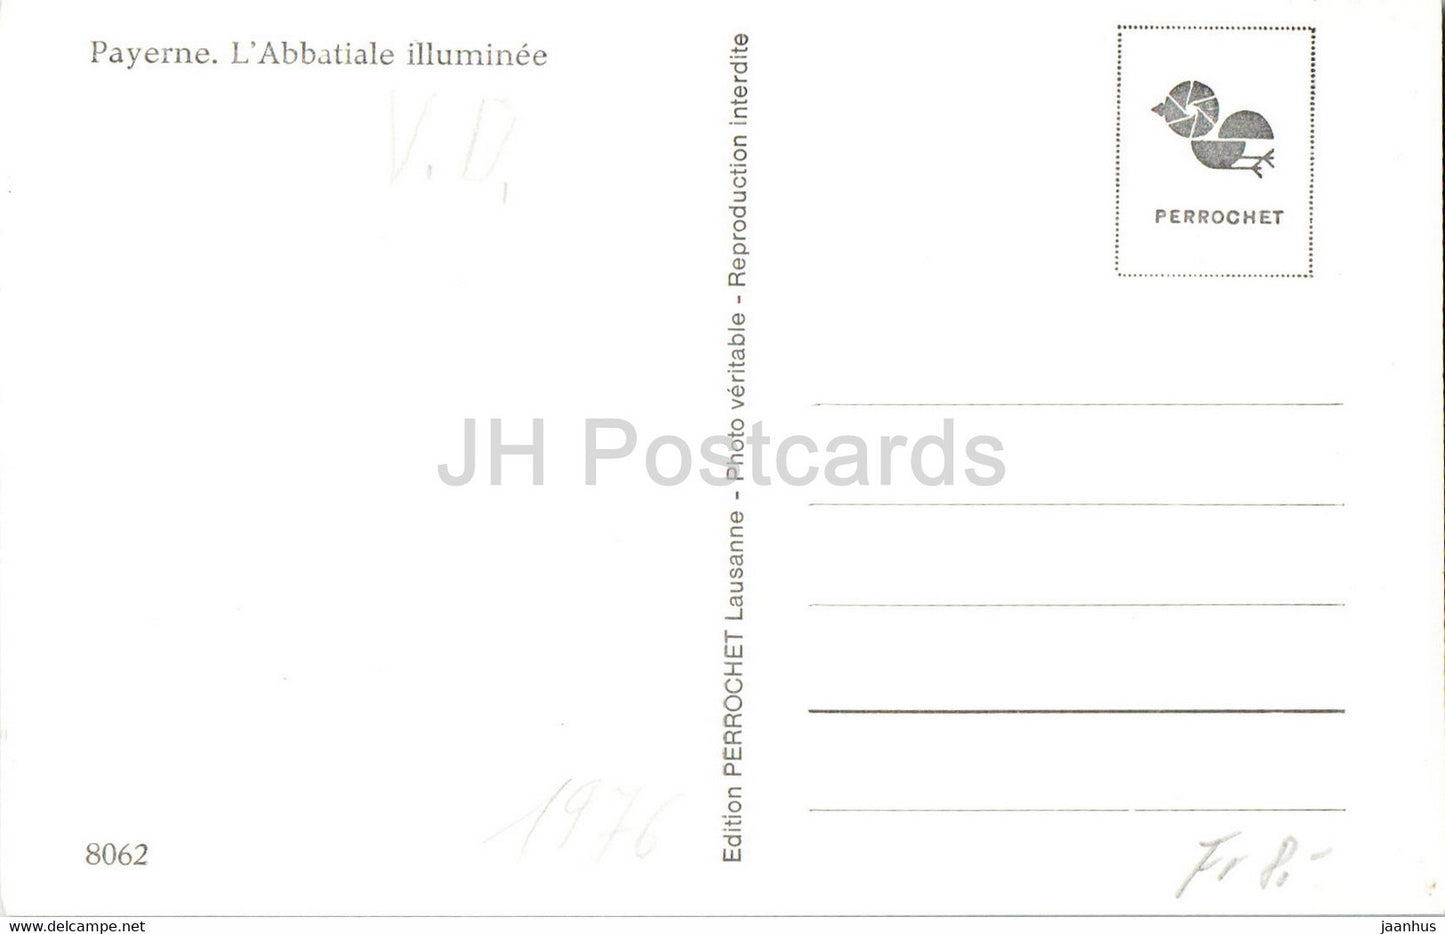 Payerne - L'Abbatiale illuminee - Abtei - 8062 - alte Postkarte - Schweiz - unbenutzt